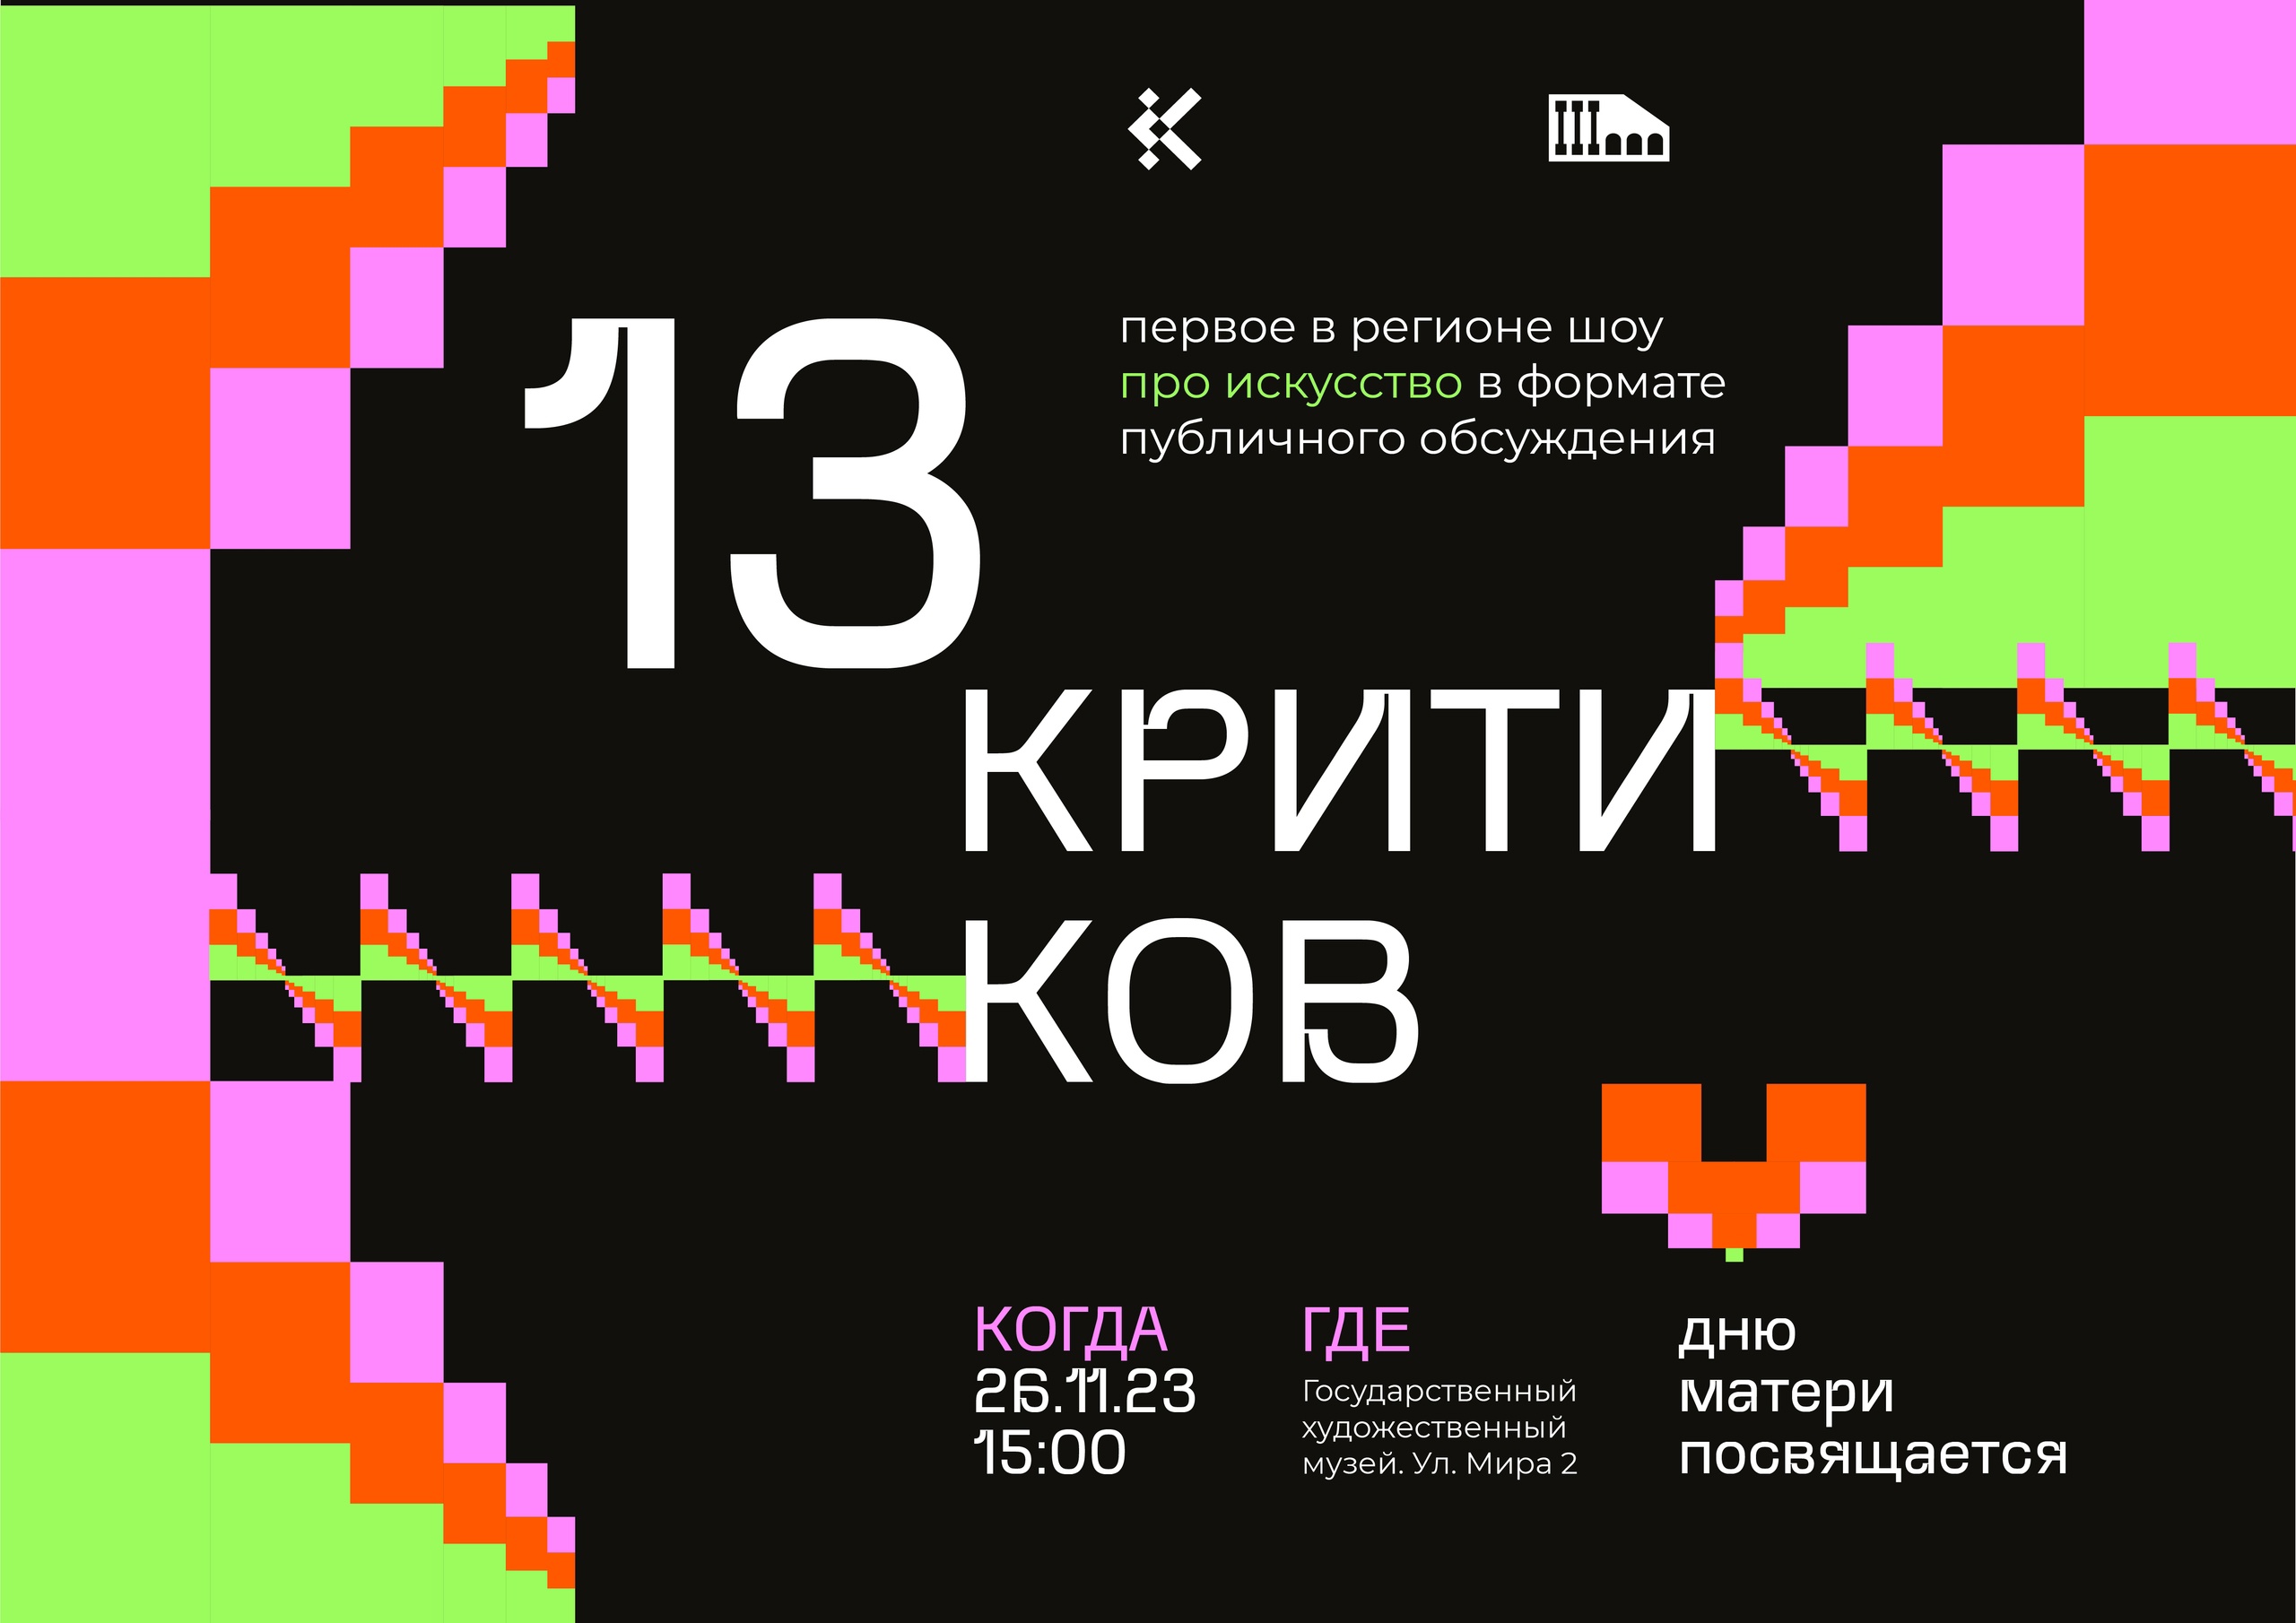 26 ноября в 15:00 Государственный художественный музей приглашает 13 критиков на открытый диалог об искусстве «13 критиков».